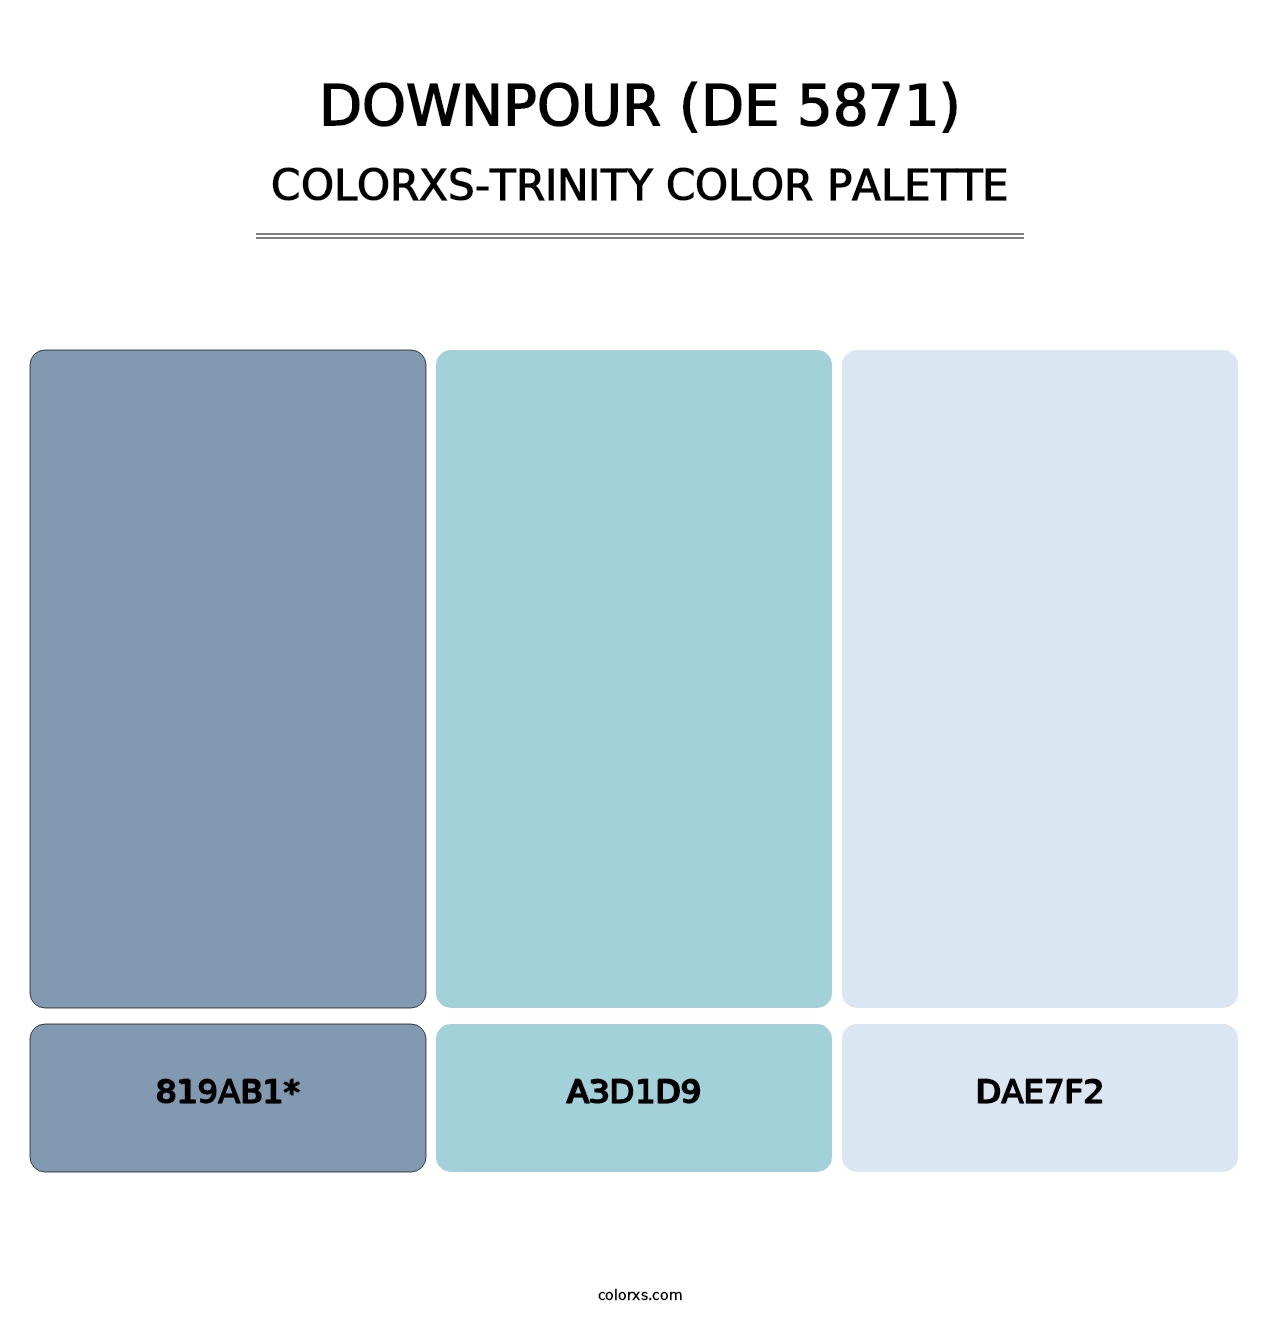 Downpour (DE 5871) - Colorxs Trinity Palette